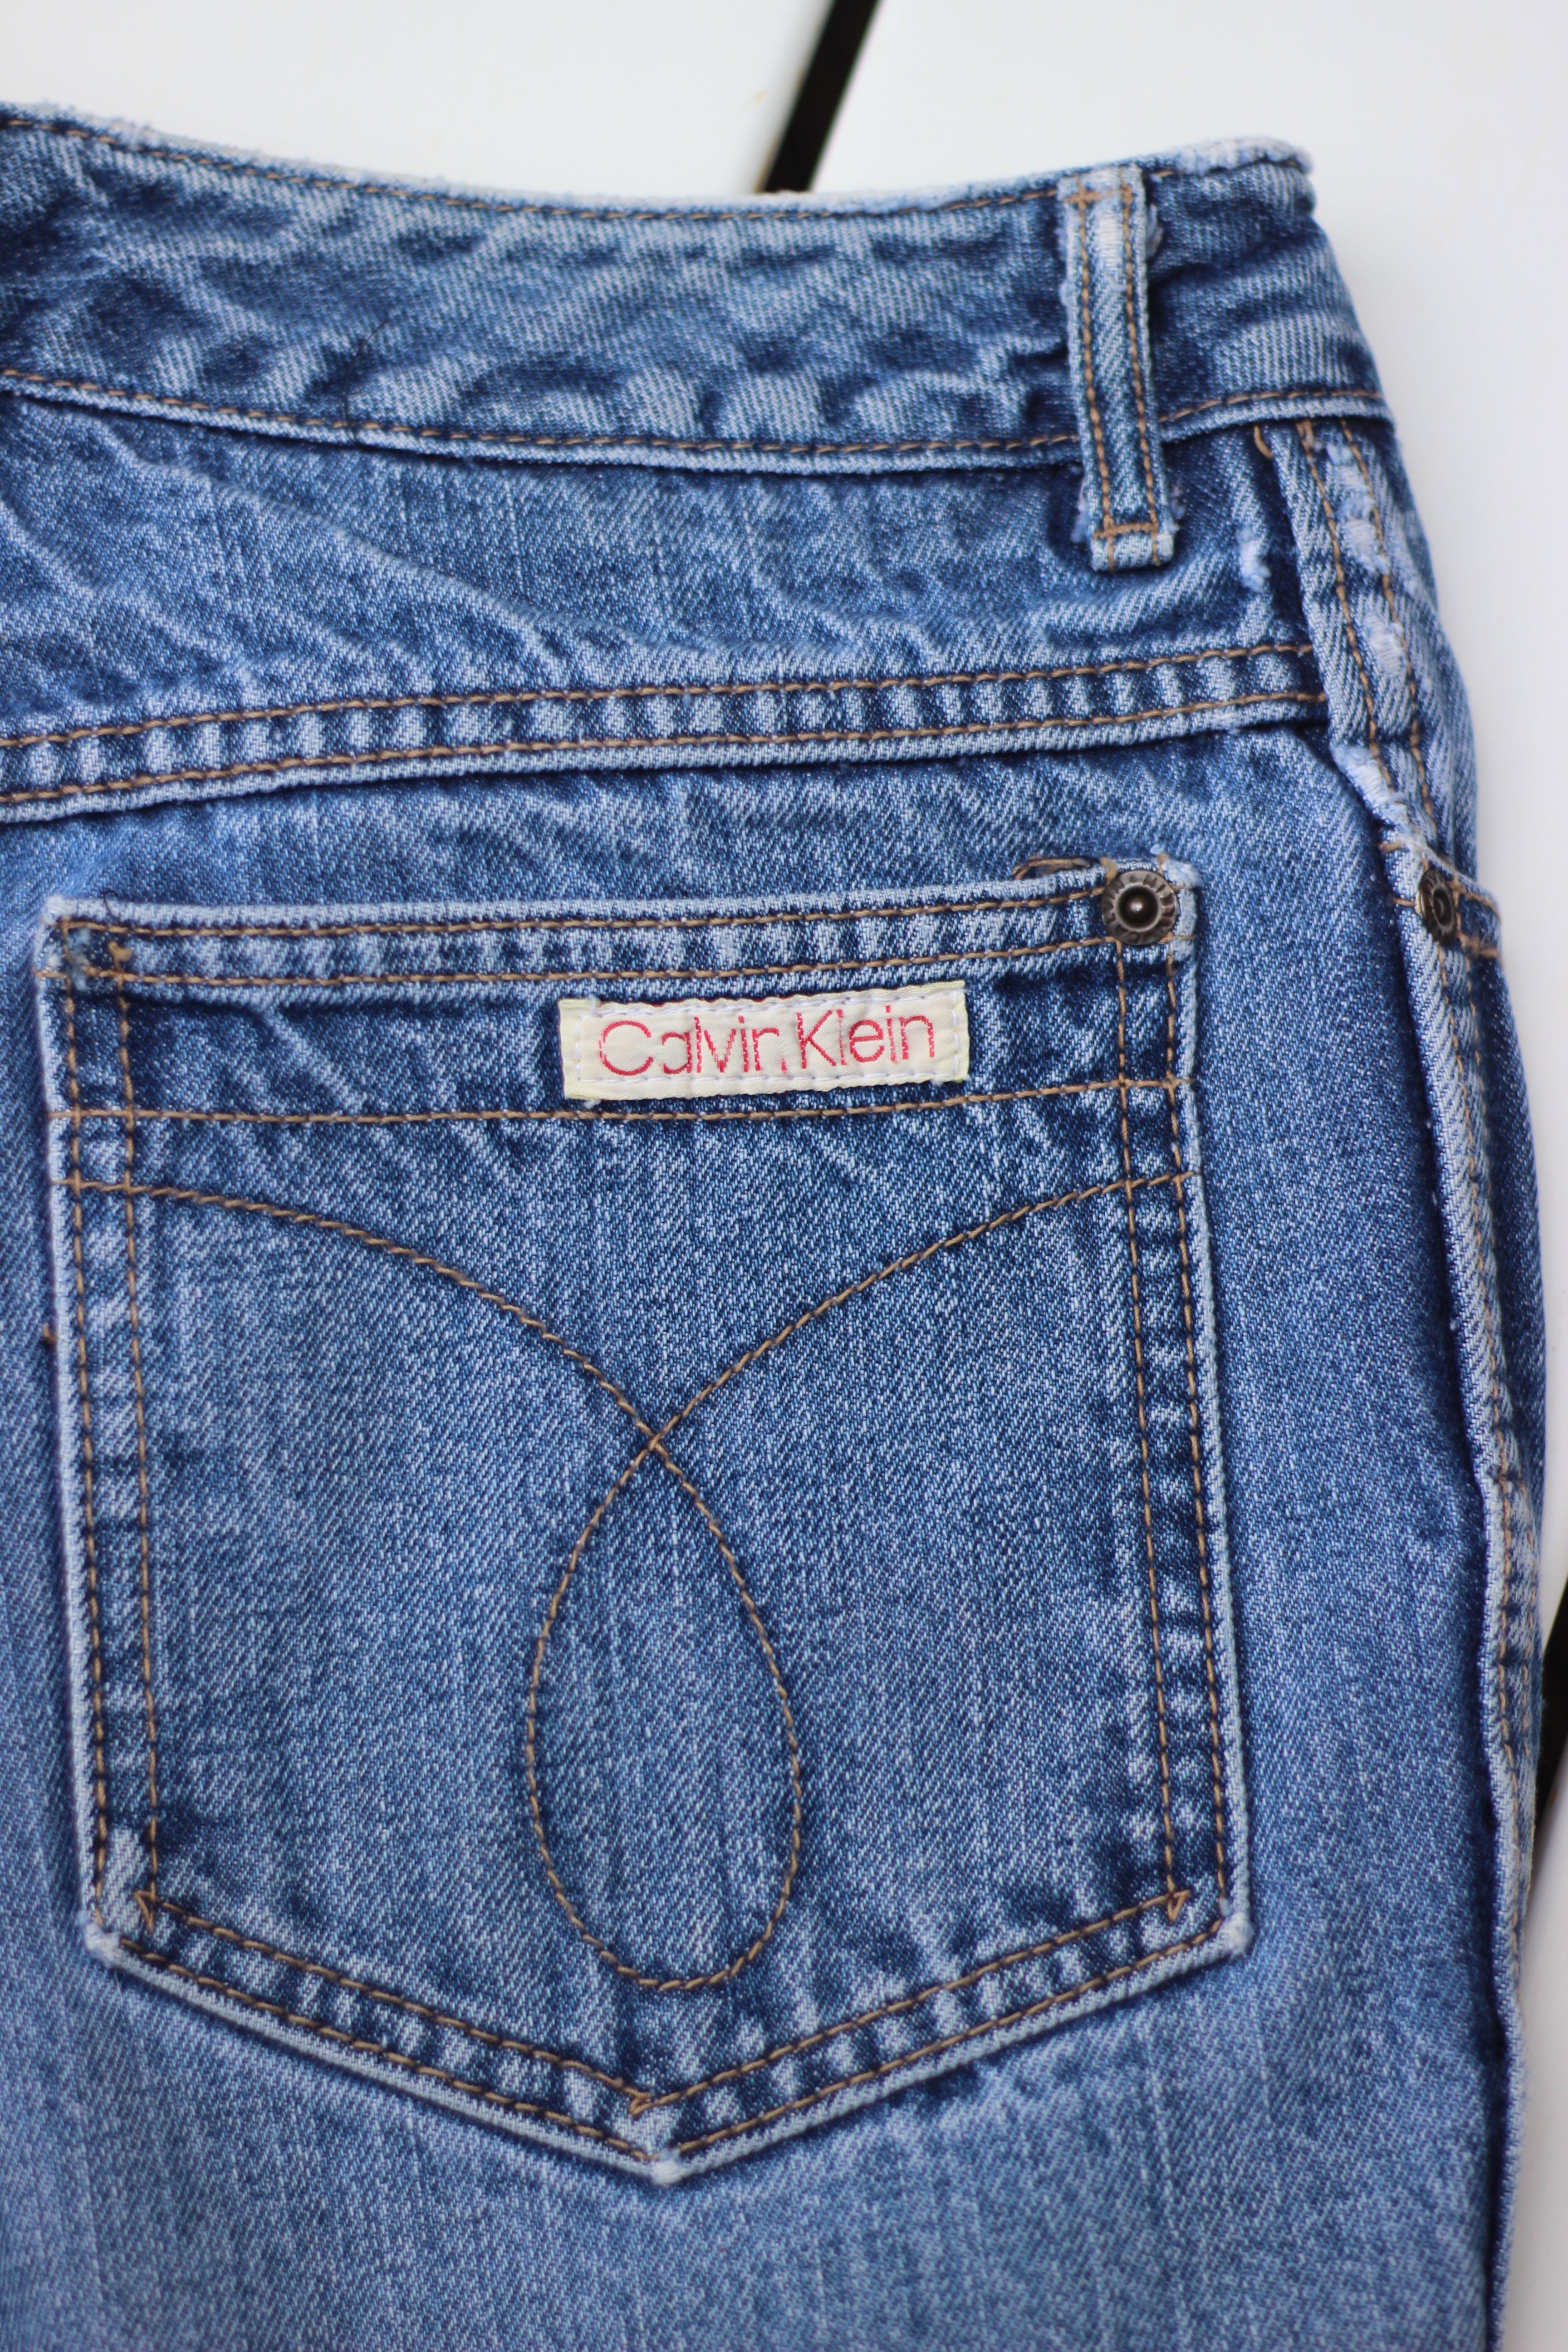 Vintage Calvin Klein Cutoff Denim Shorts (M/L) – Love + Leather